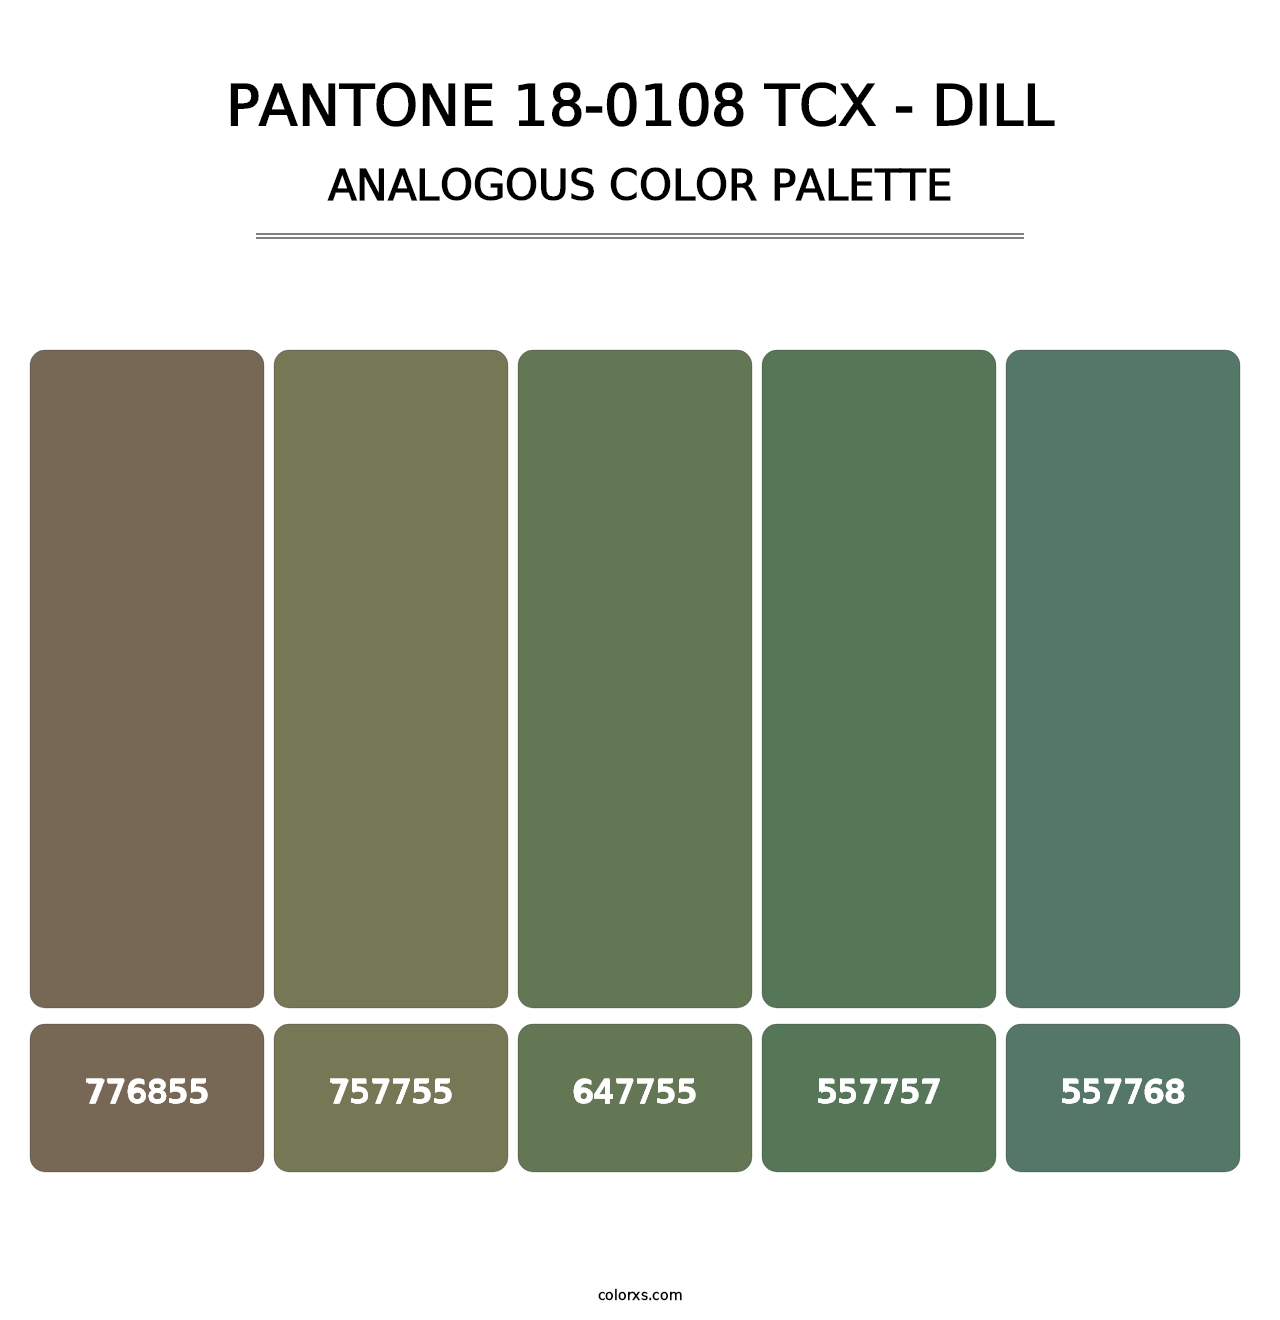 PANTONE 18-0108 TCX - Dill - Analogous Color Palette